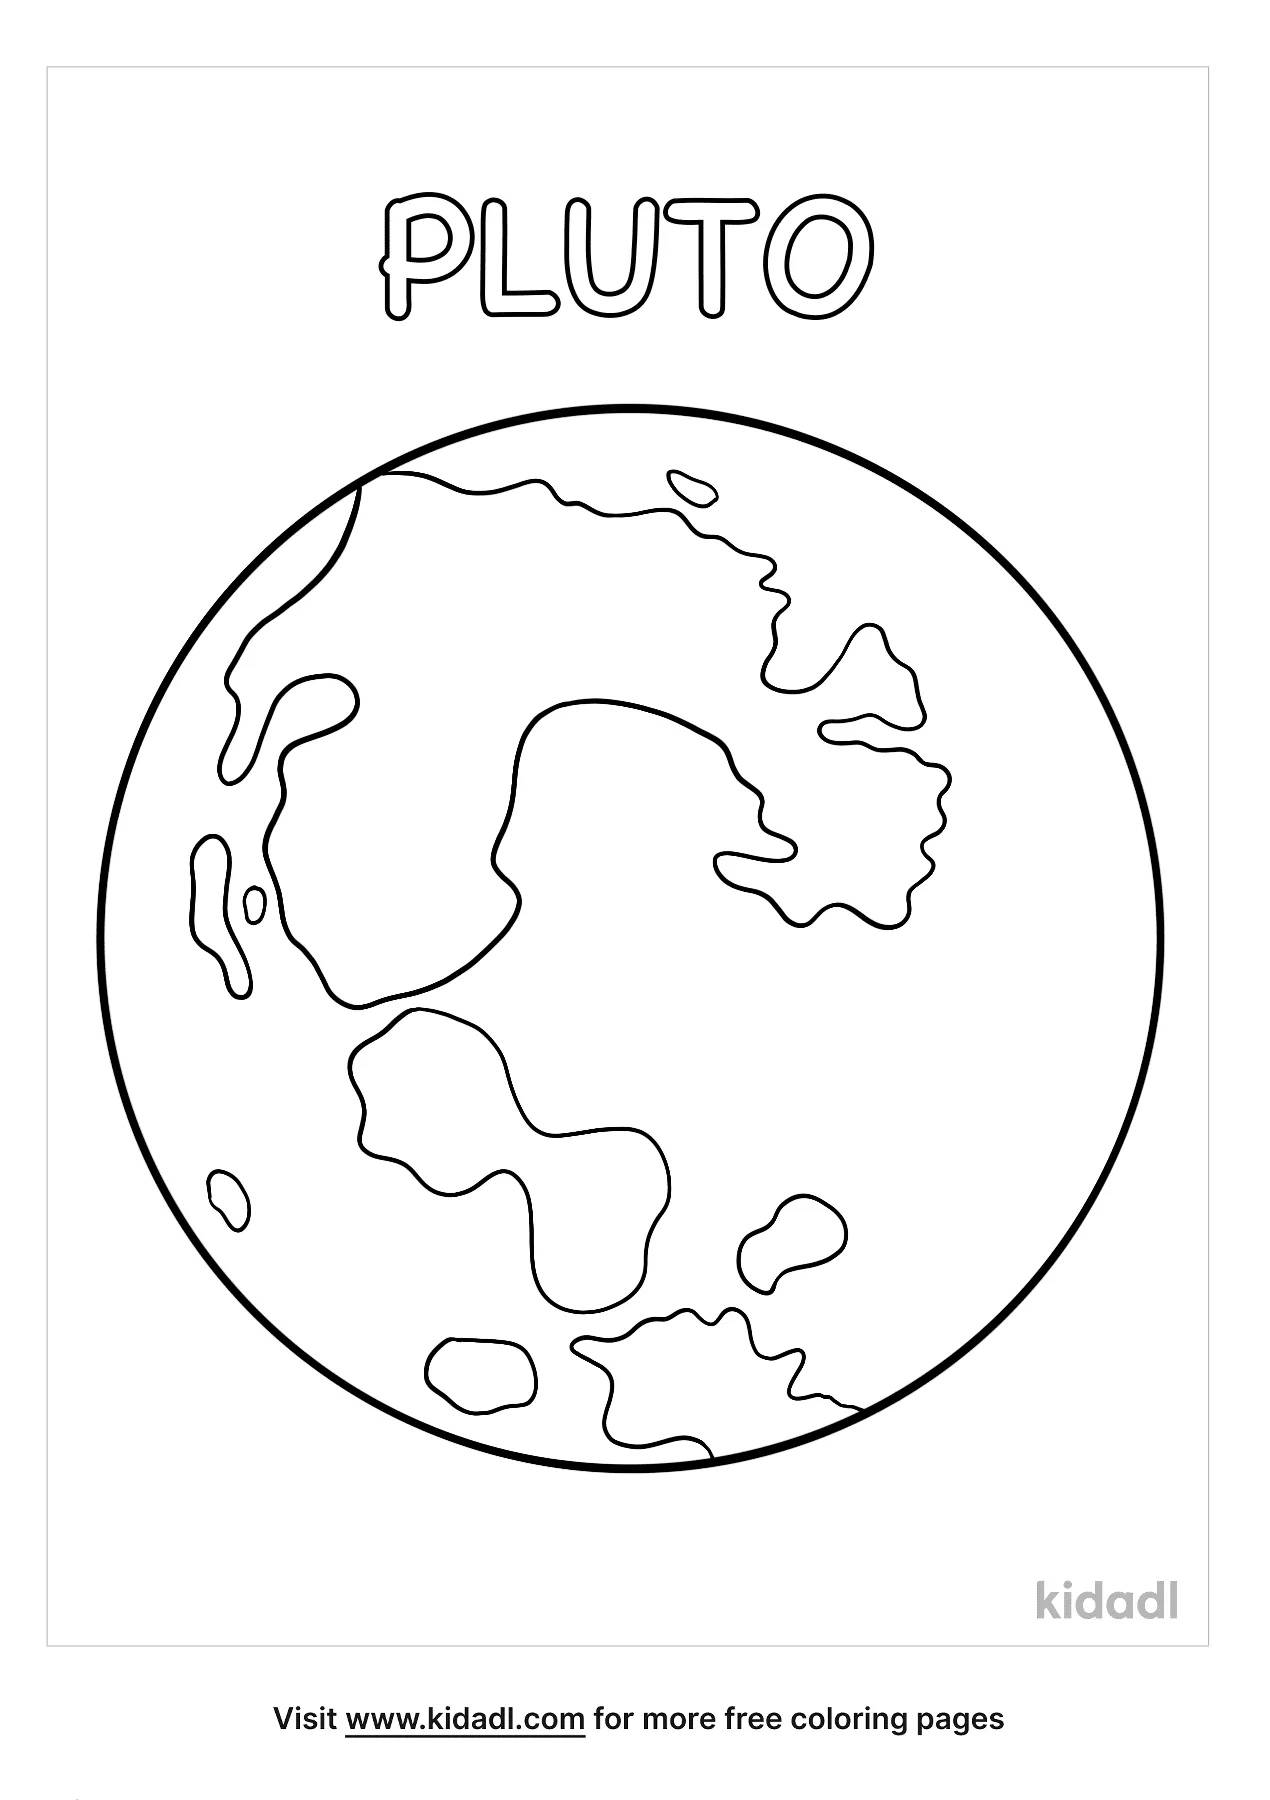 Плутон раскраска для детей